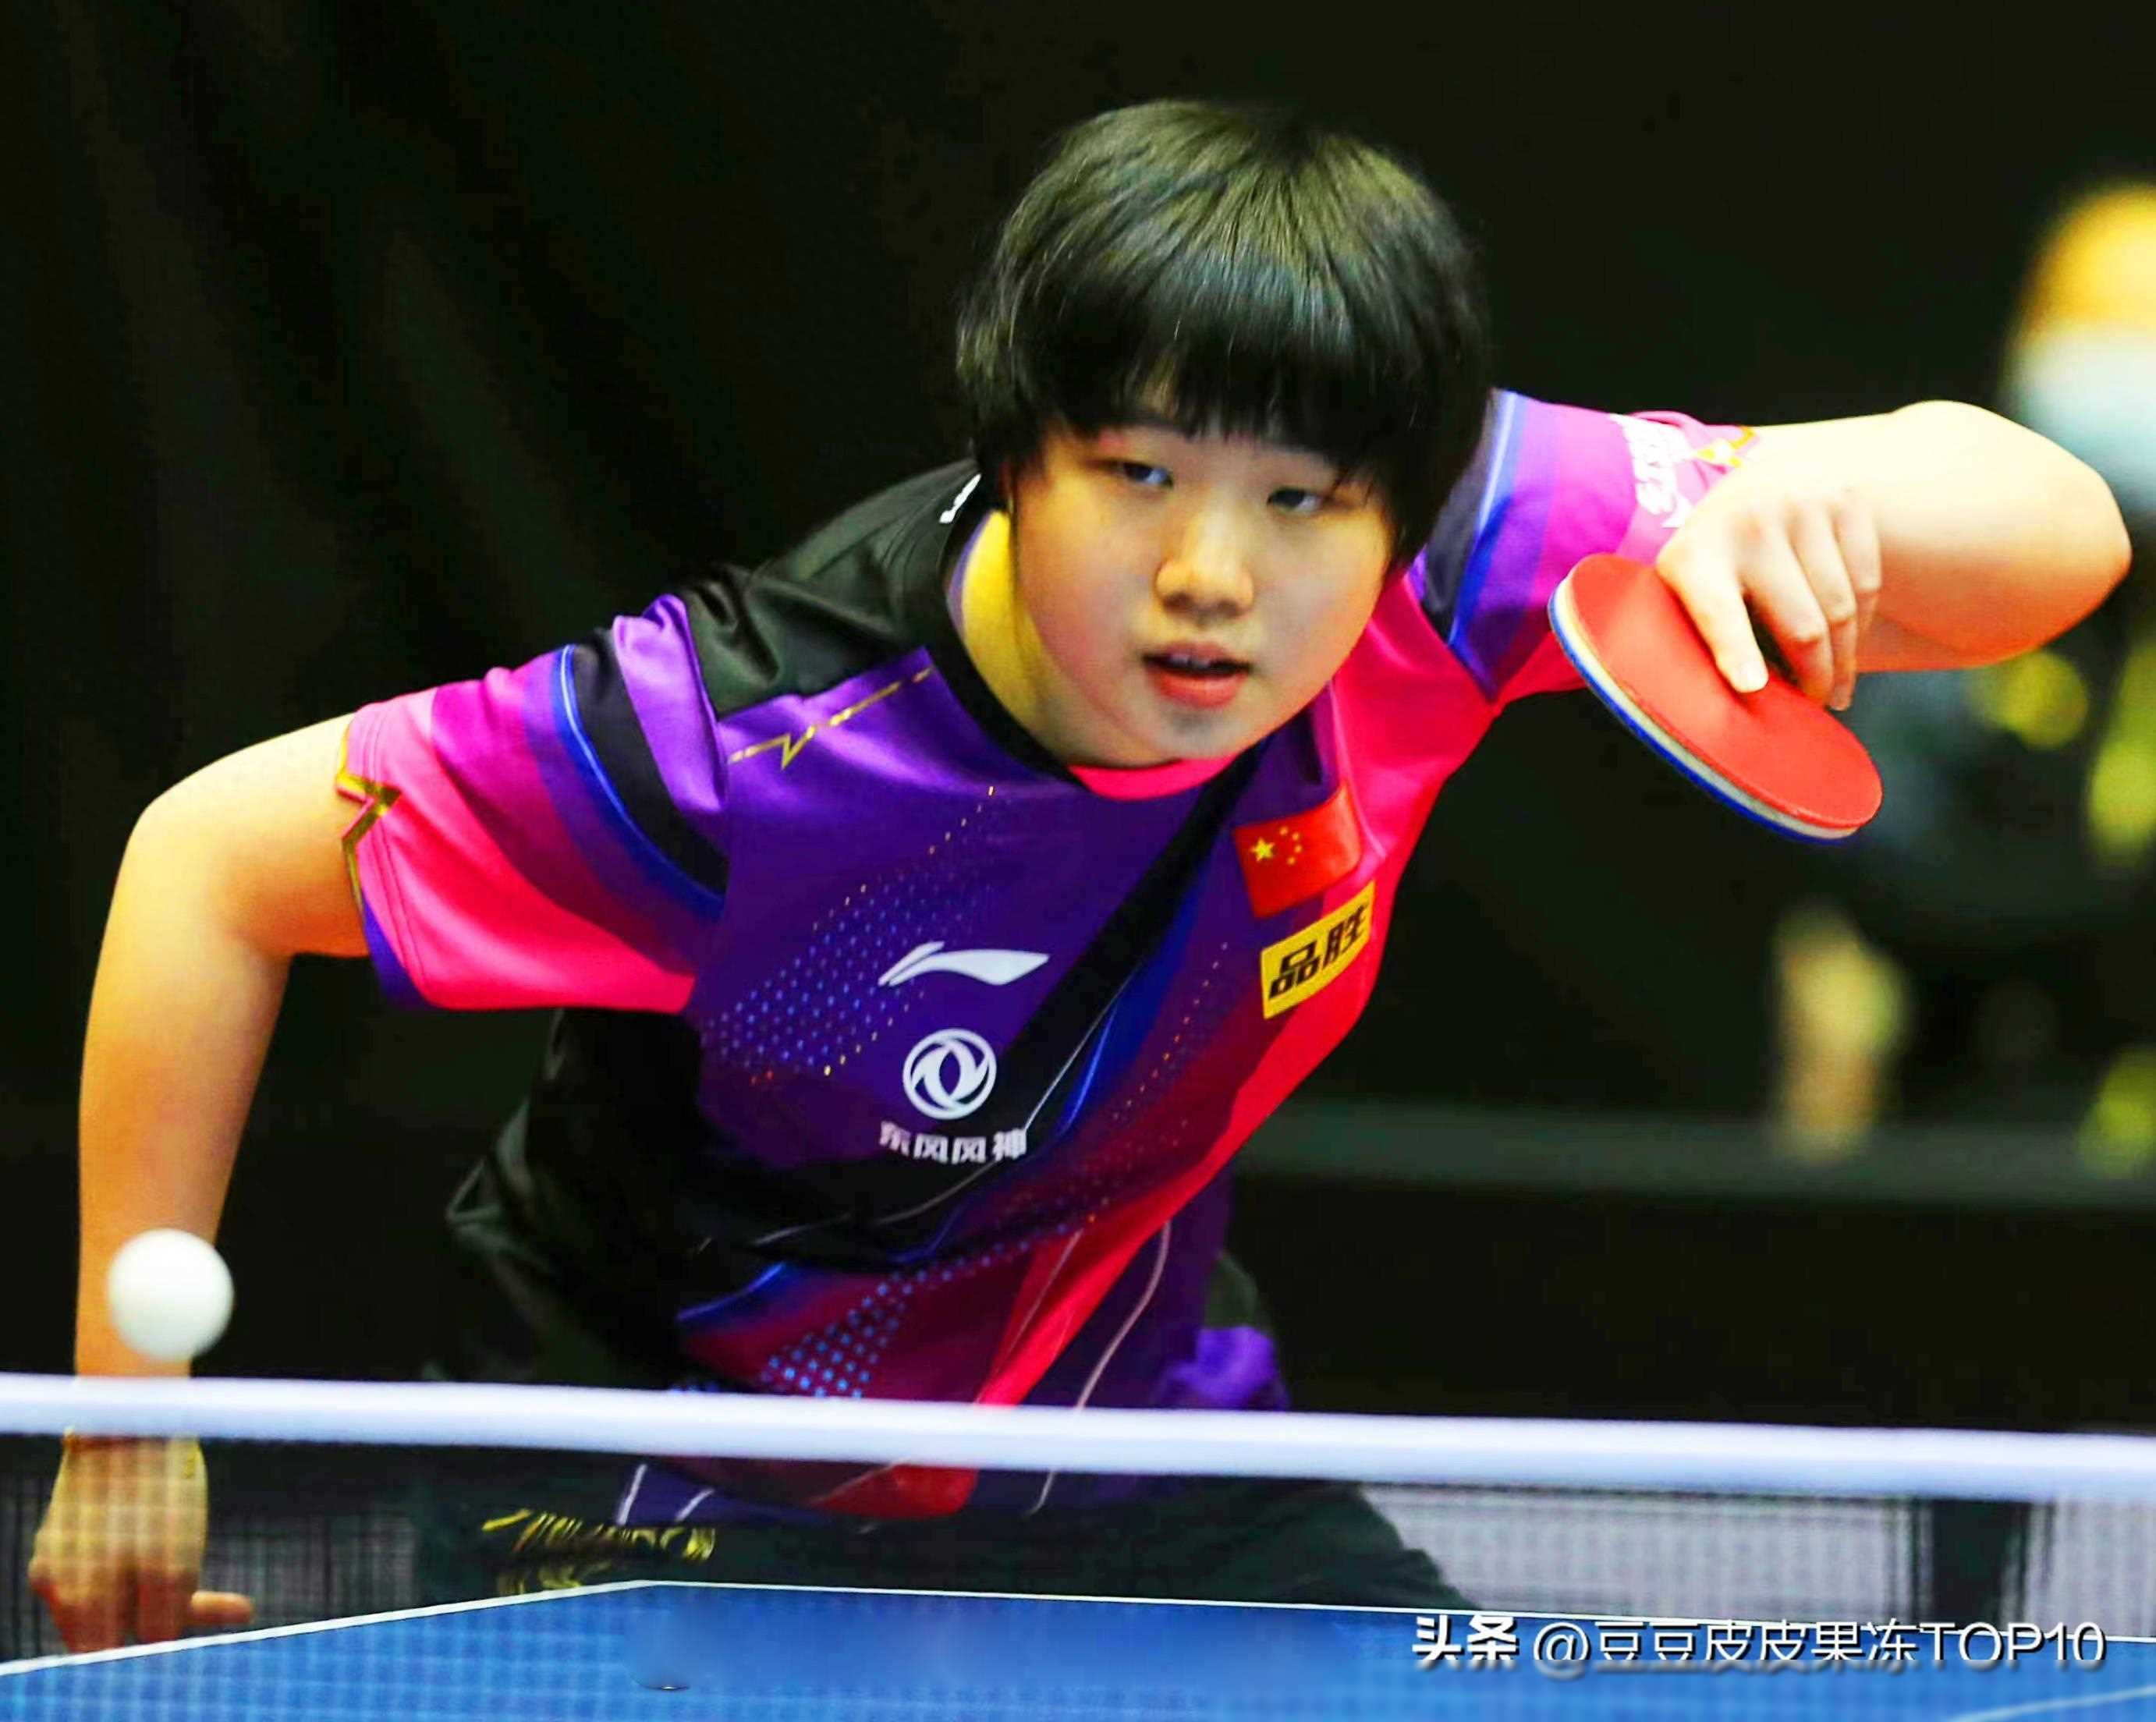 乒乓球左手女将最成功的十位:倪夏莲排名第七,郭跃第三!